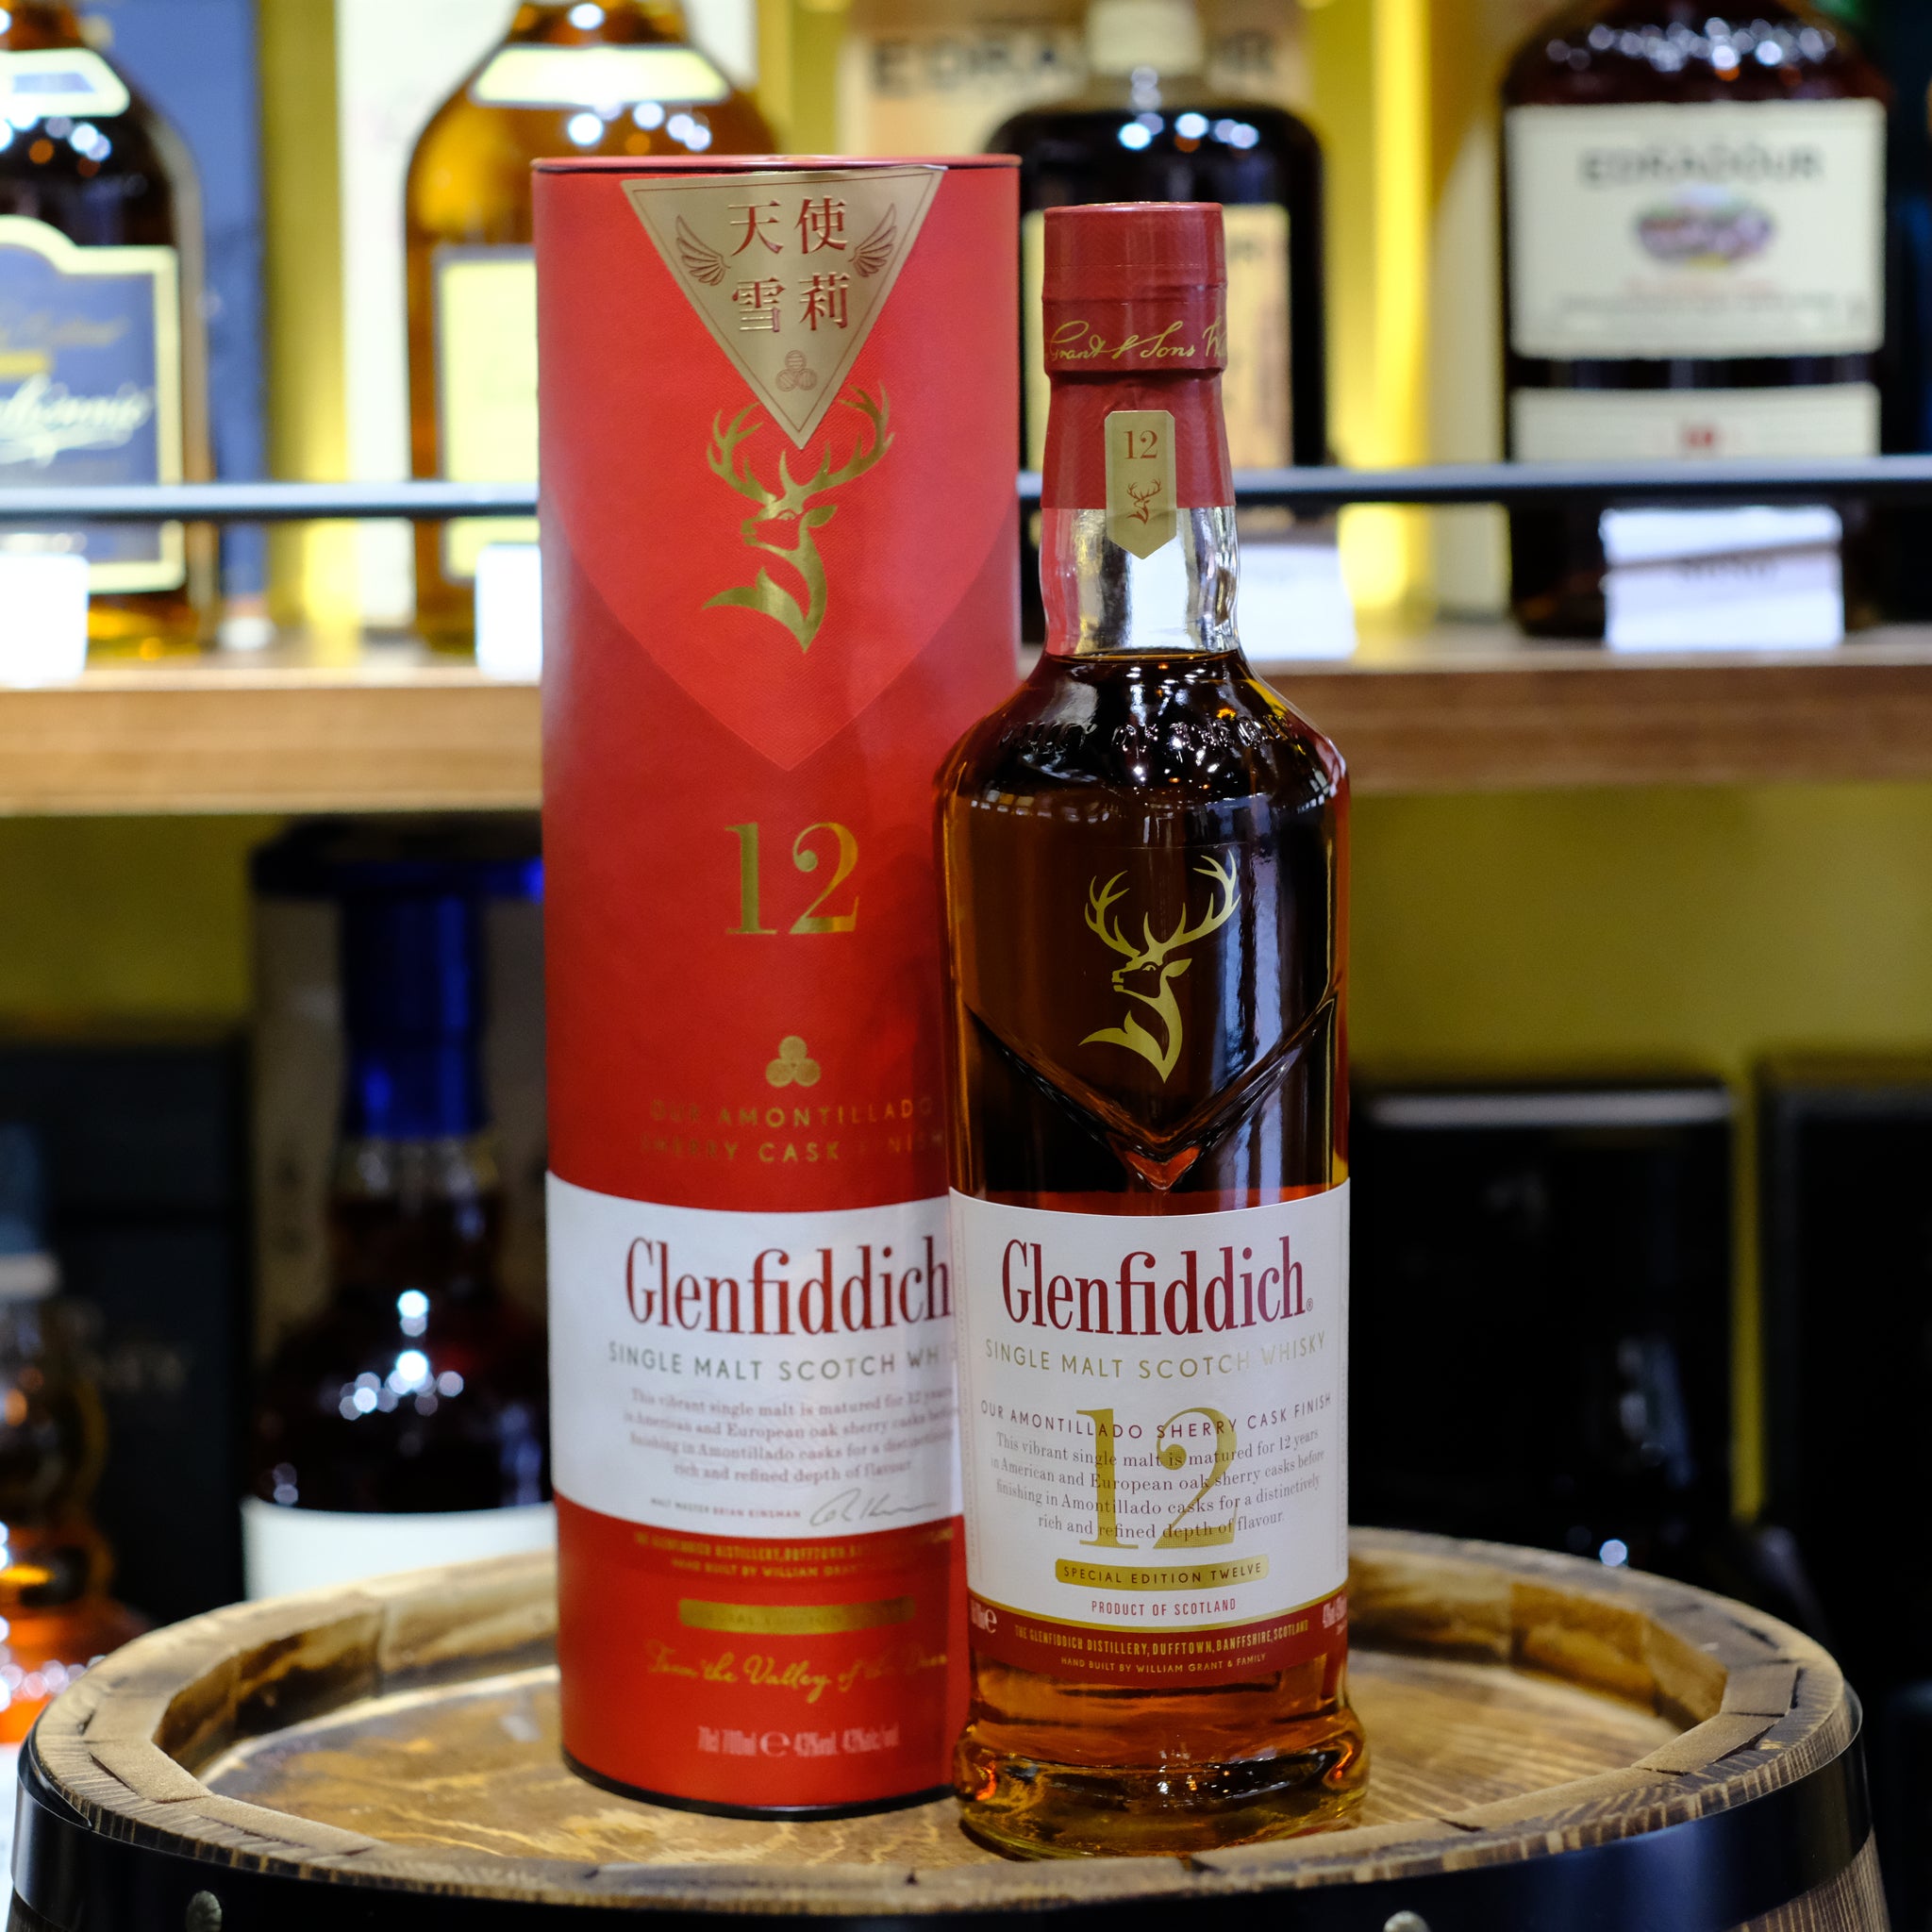 Glenfiddich 12 Years Old Amontillado Sherry Cask Finish Single Malt Scotch Whisky